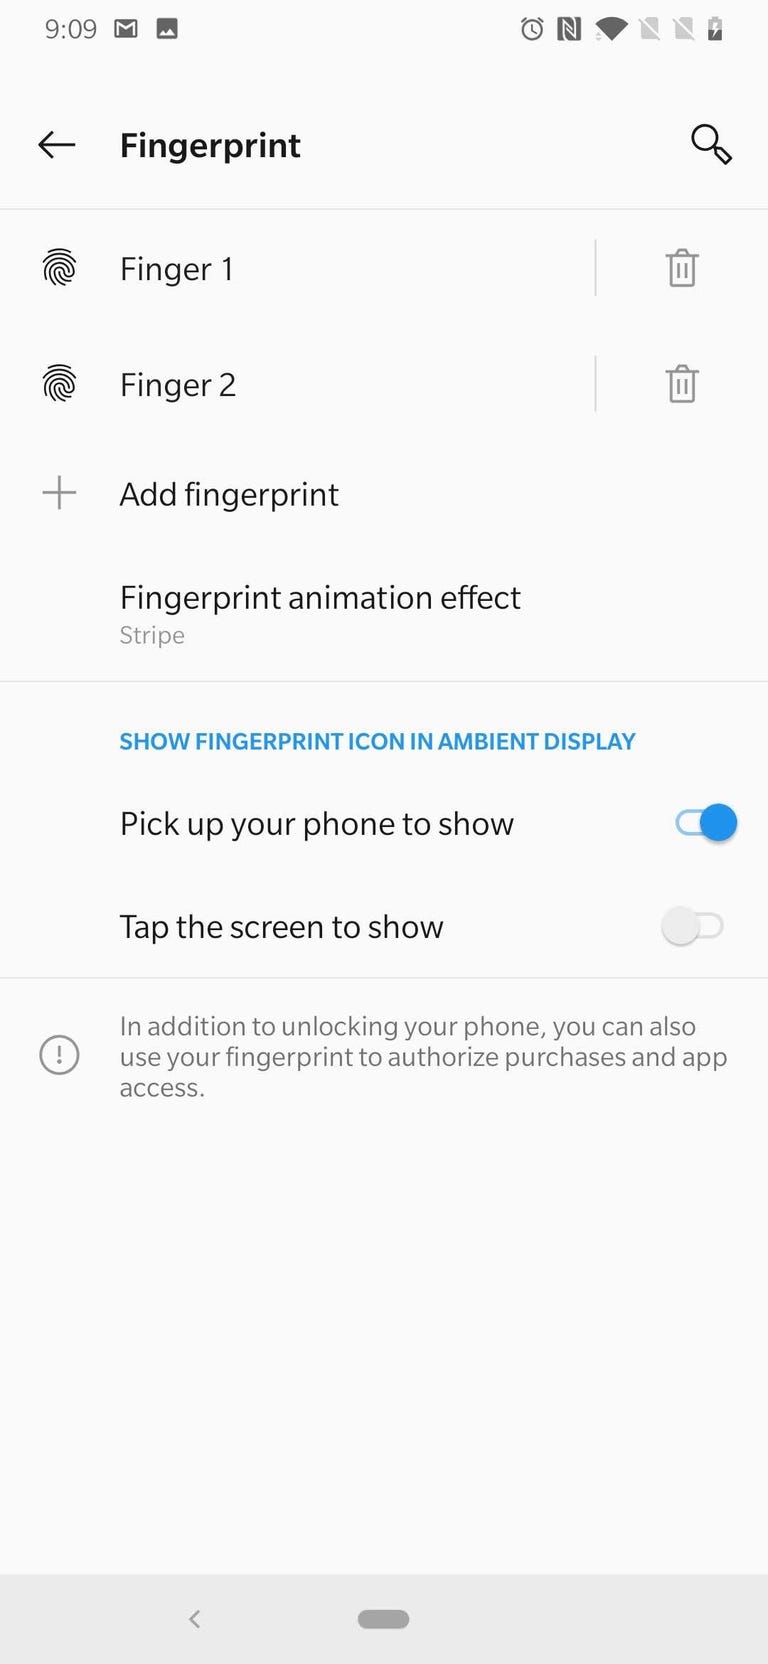 oneplus-6t-fingerprint-sensor-settings